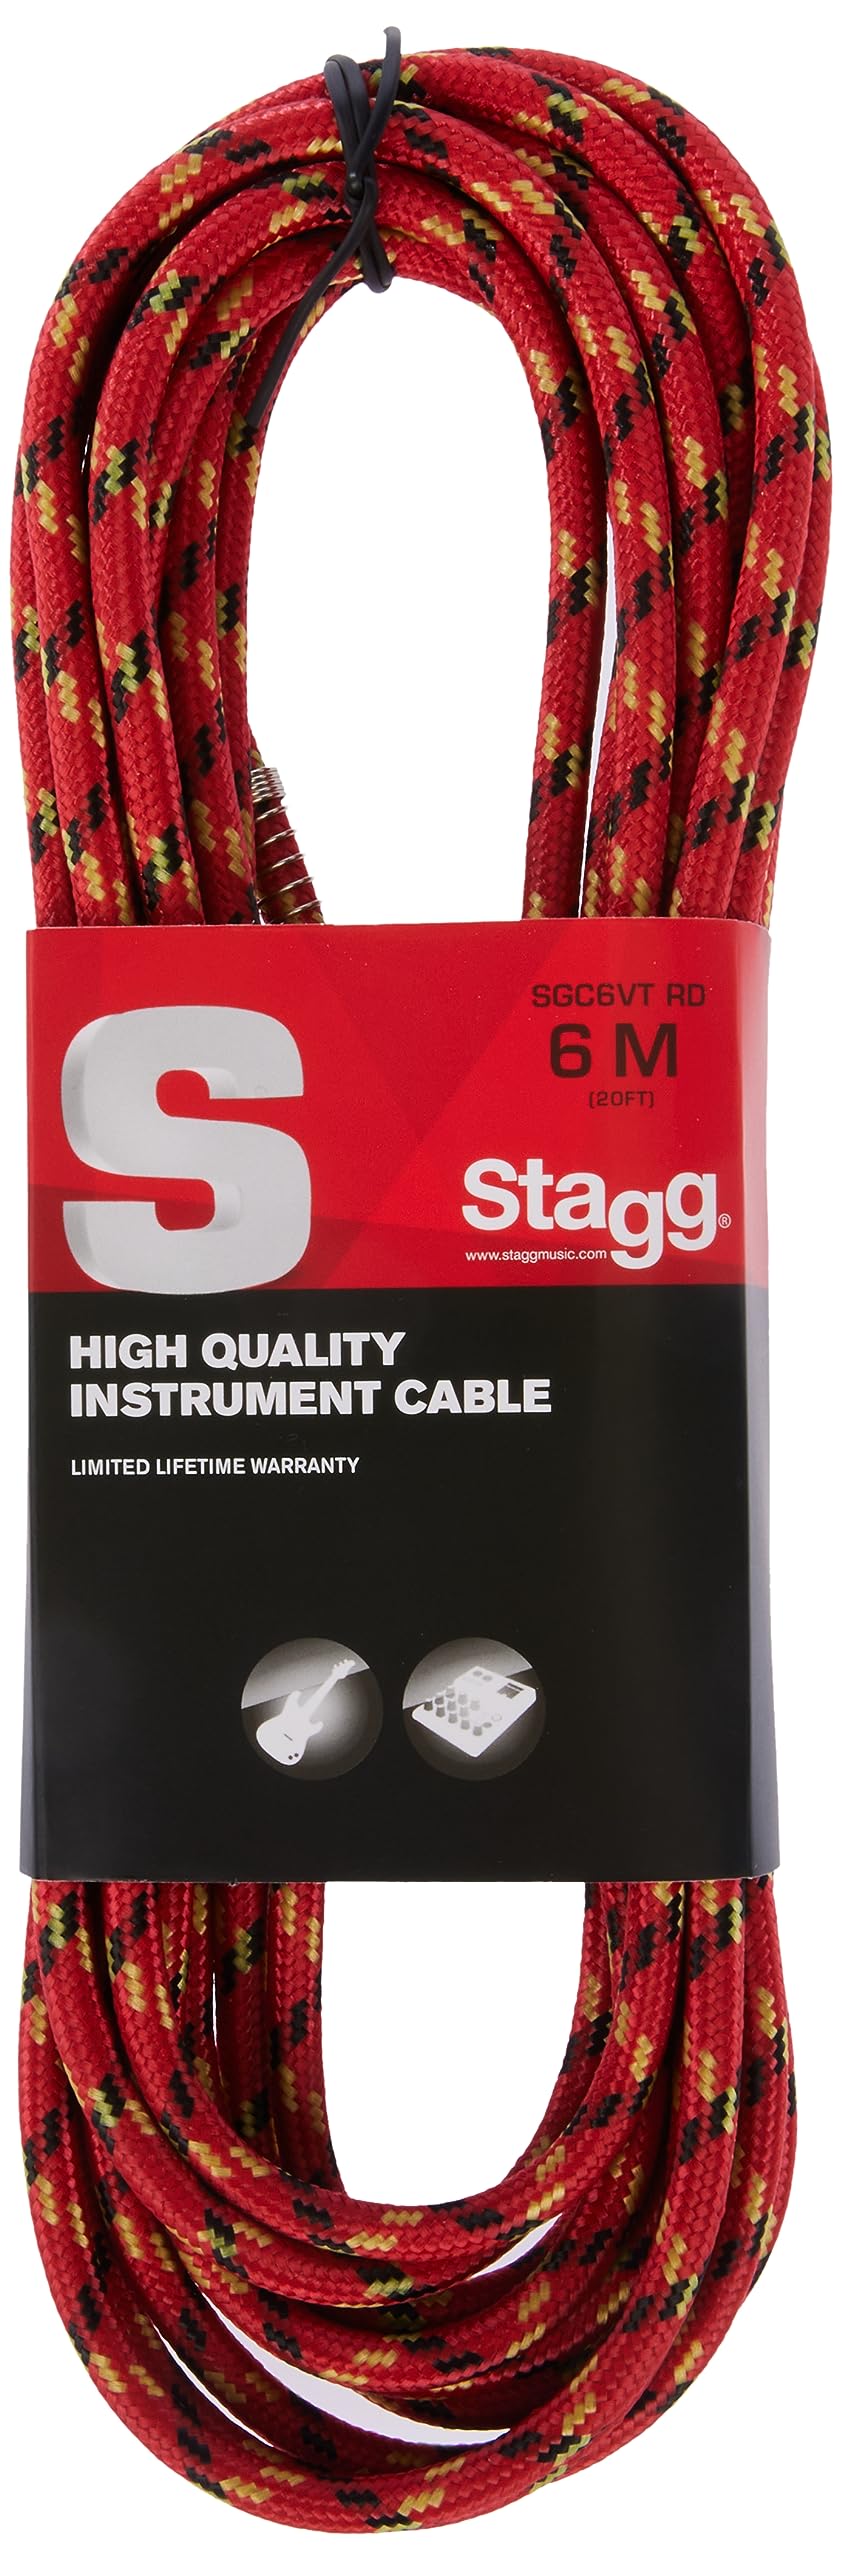 Classique Stagg SGC6VT RD Vintage Tweed Câble d´Instrument 6 m Rouge PSzkYbQH7 en ligne